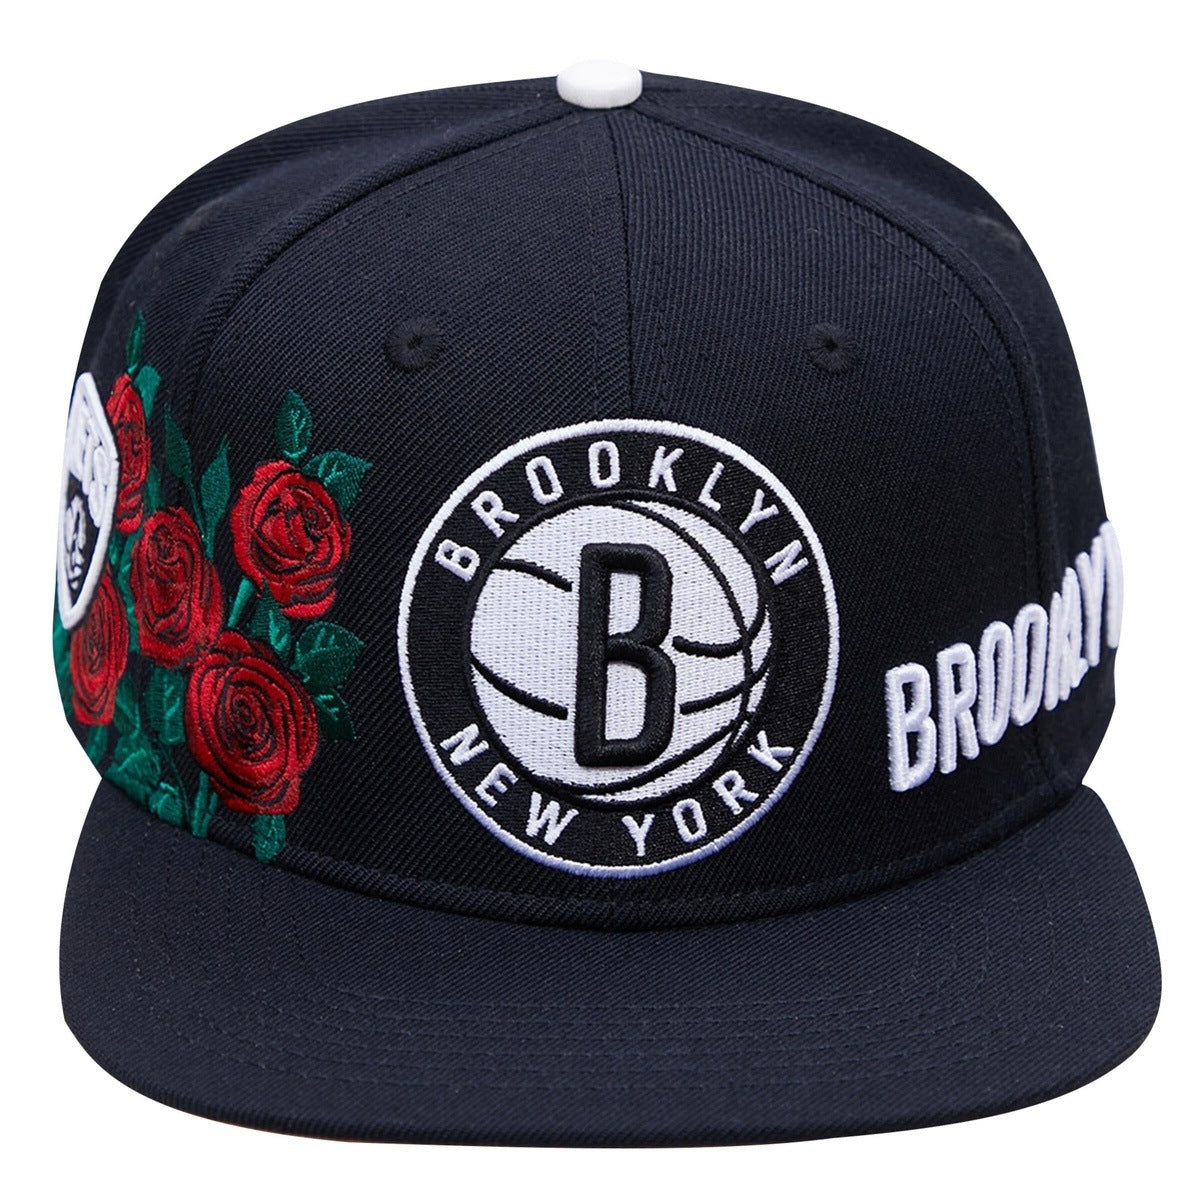 Brooklyn Nets Pro Standard Sweatsuit – Get Fly NYC